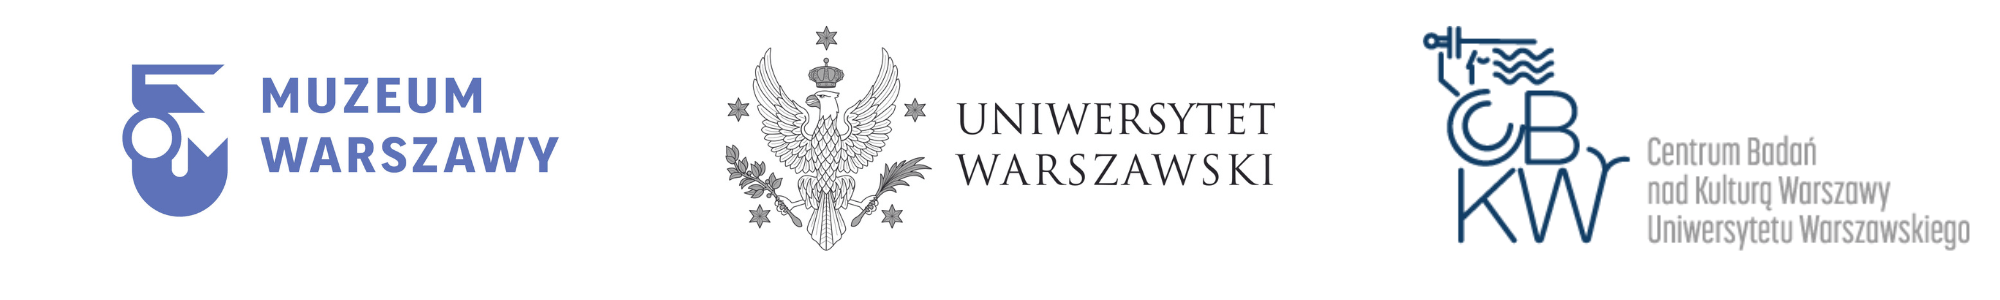 Logotypy Muzeum warszawy, Uniwersytetu warszawskiego i Centrum Badań nad kulturą Warszwy